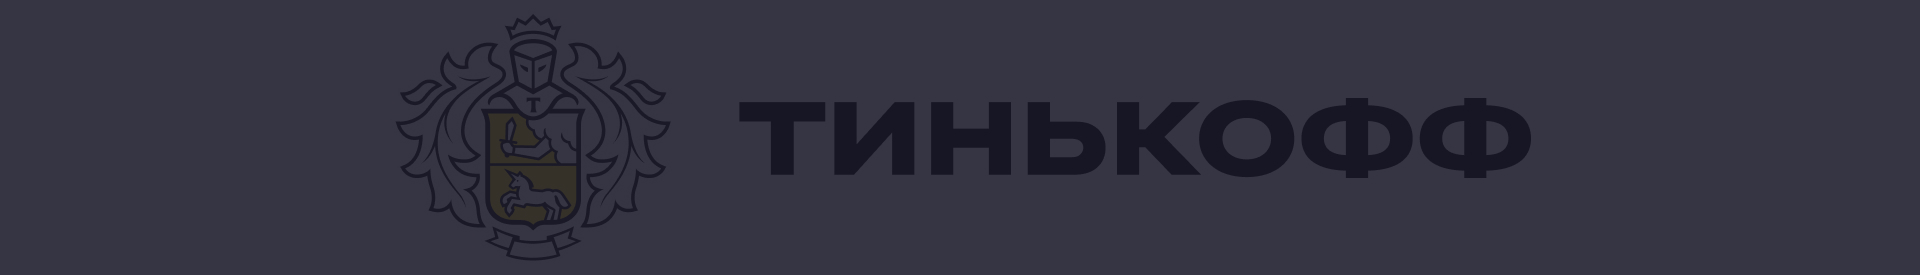 Акции и спецпредложения в банке Тинькофф в Екатеринбурге